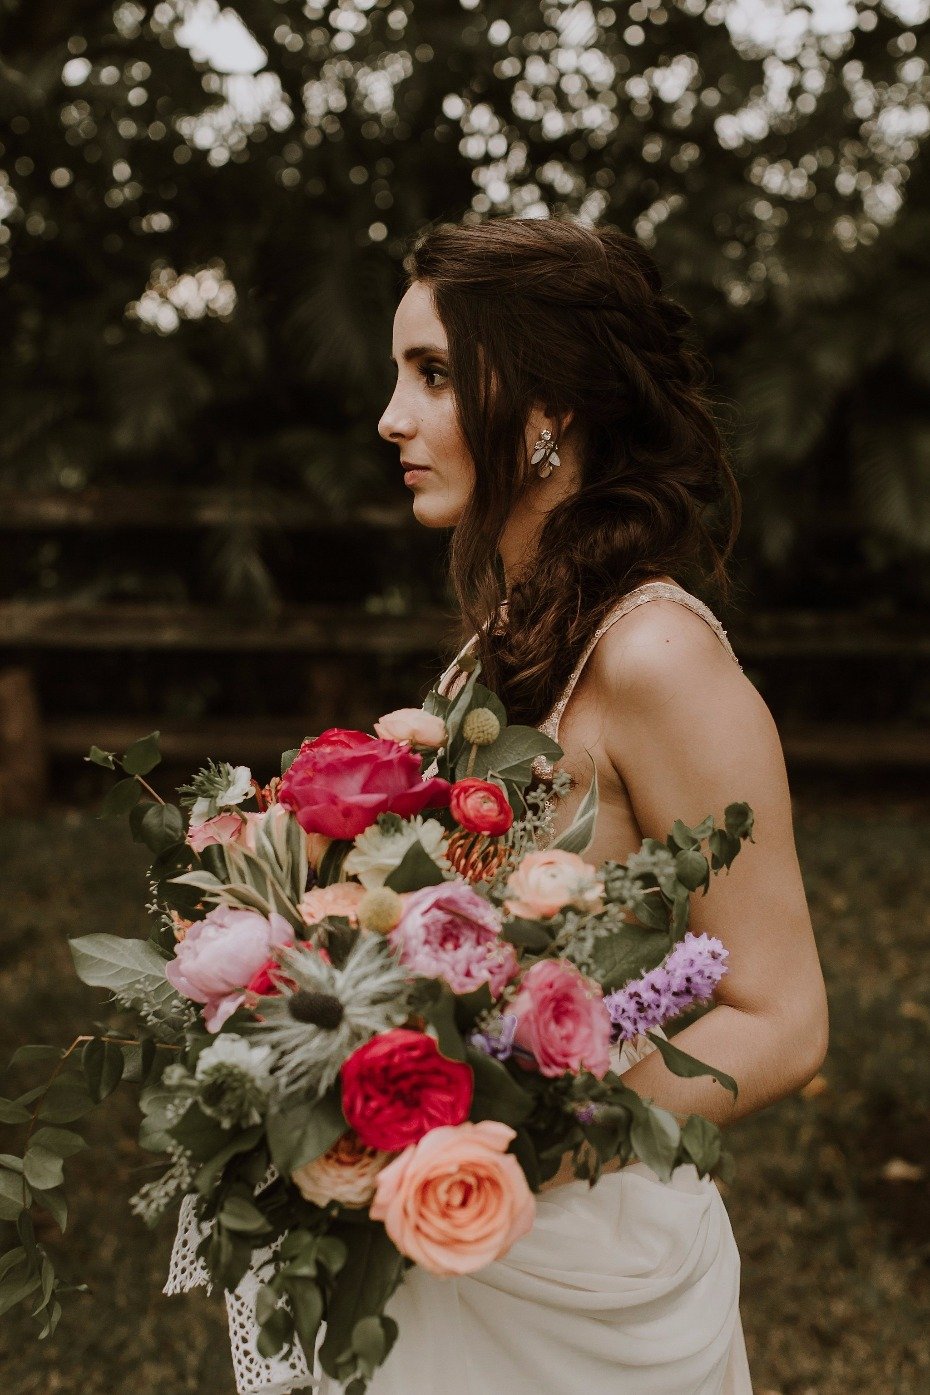 Braided bridal hair + colorful bouquet